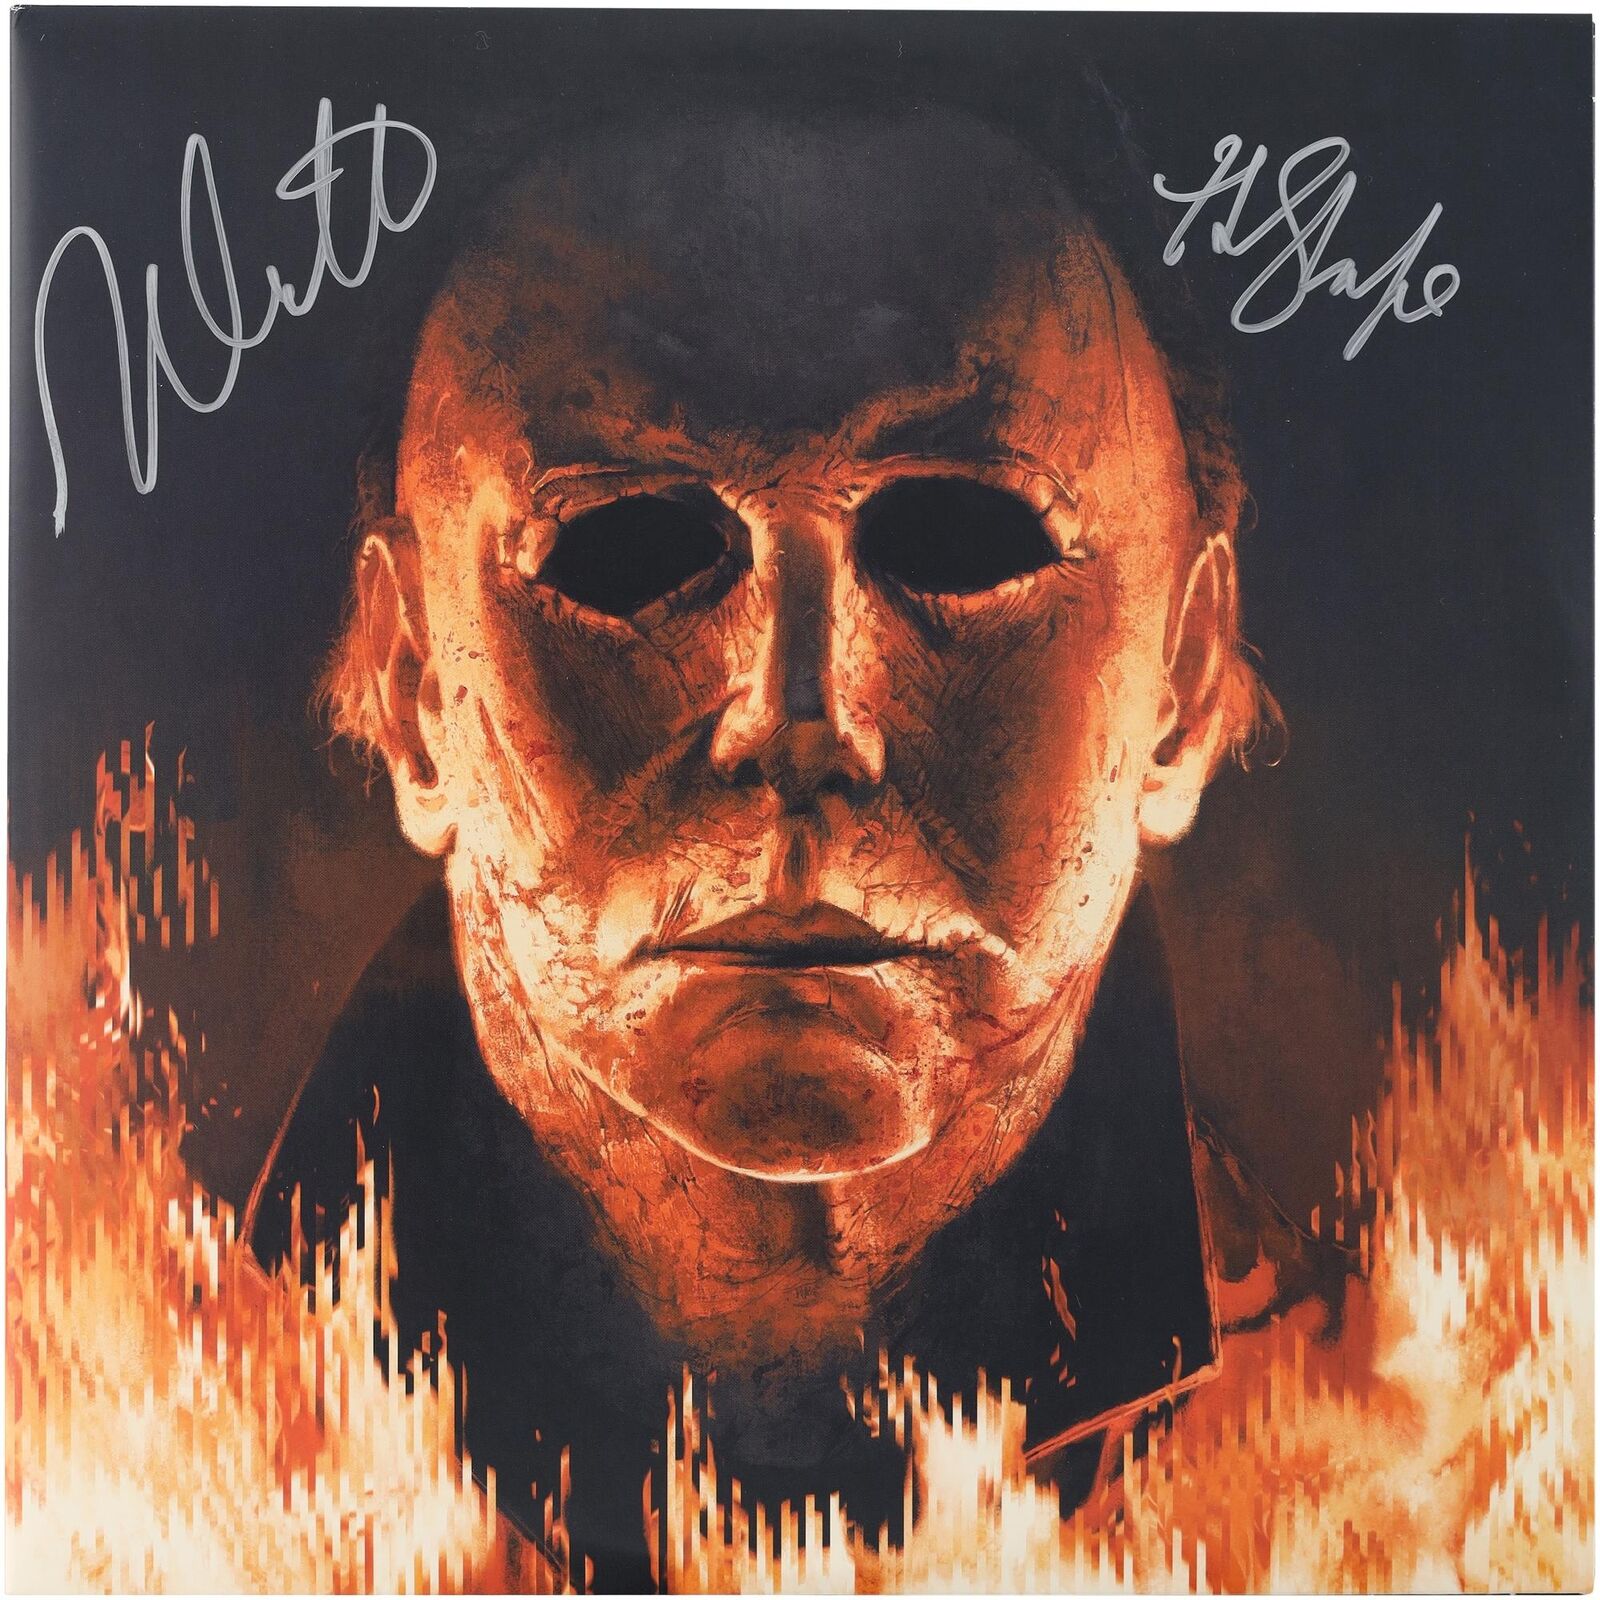 Nick Castle Halloween Album